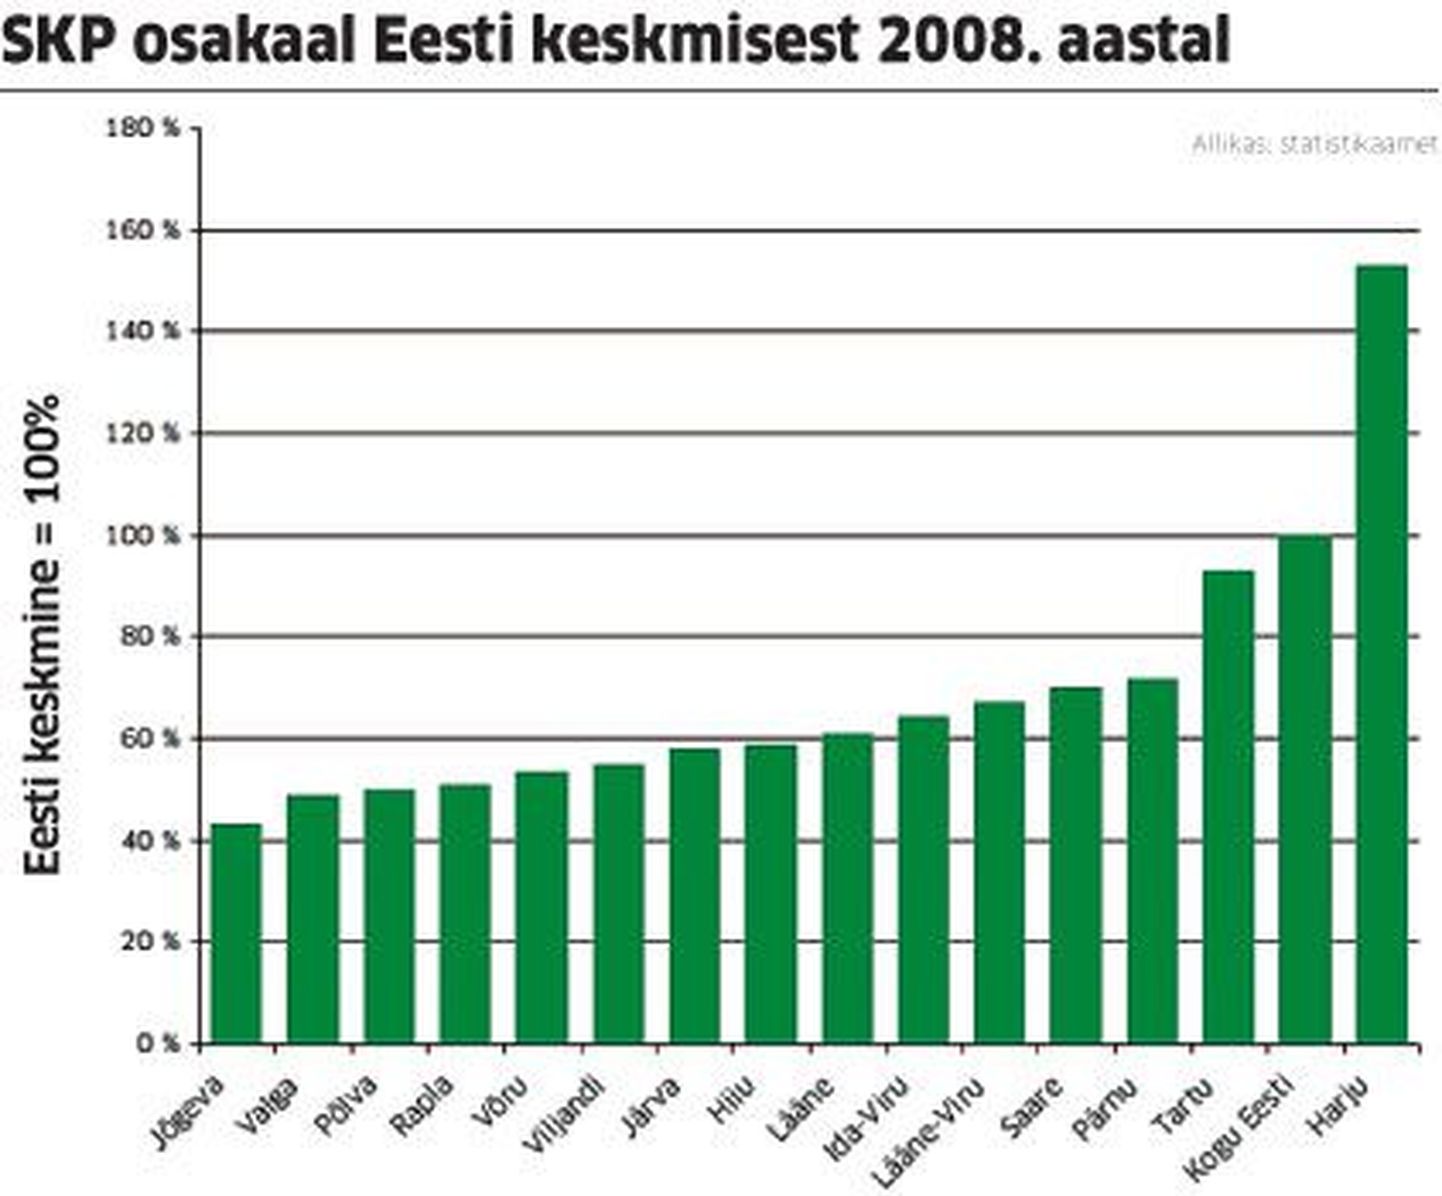 SKP osakaal Eesti keskmisest 2008. aastal